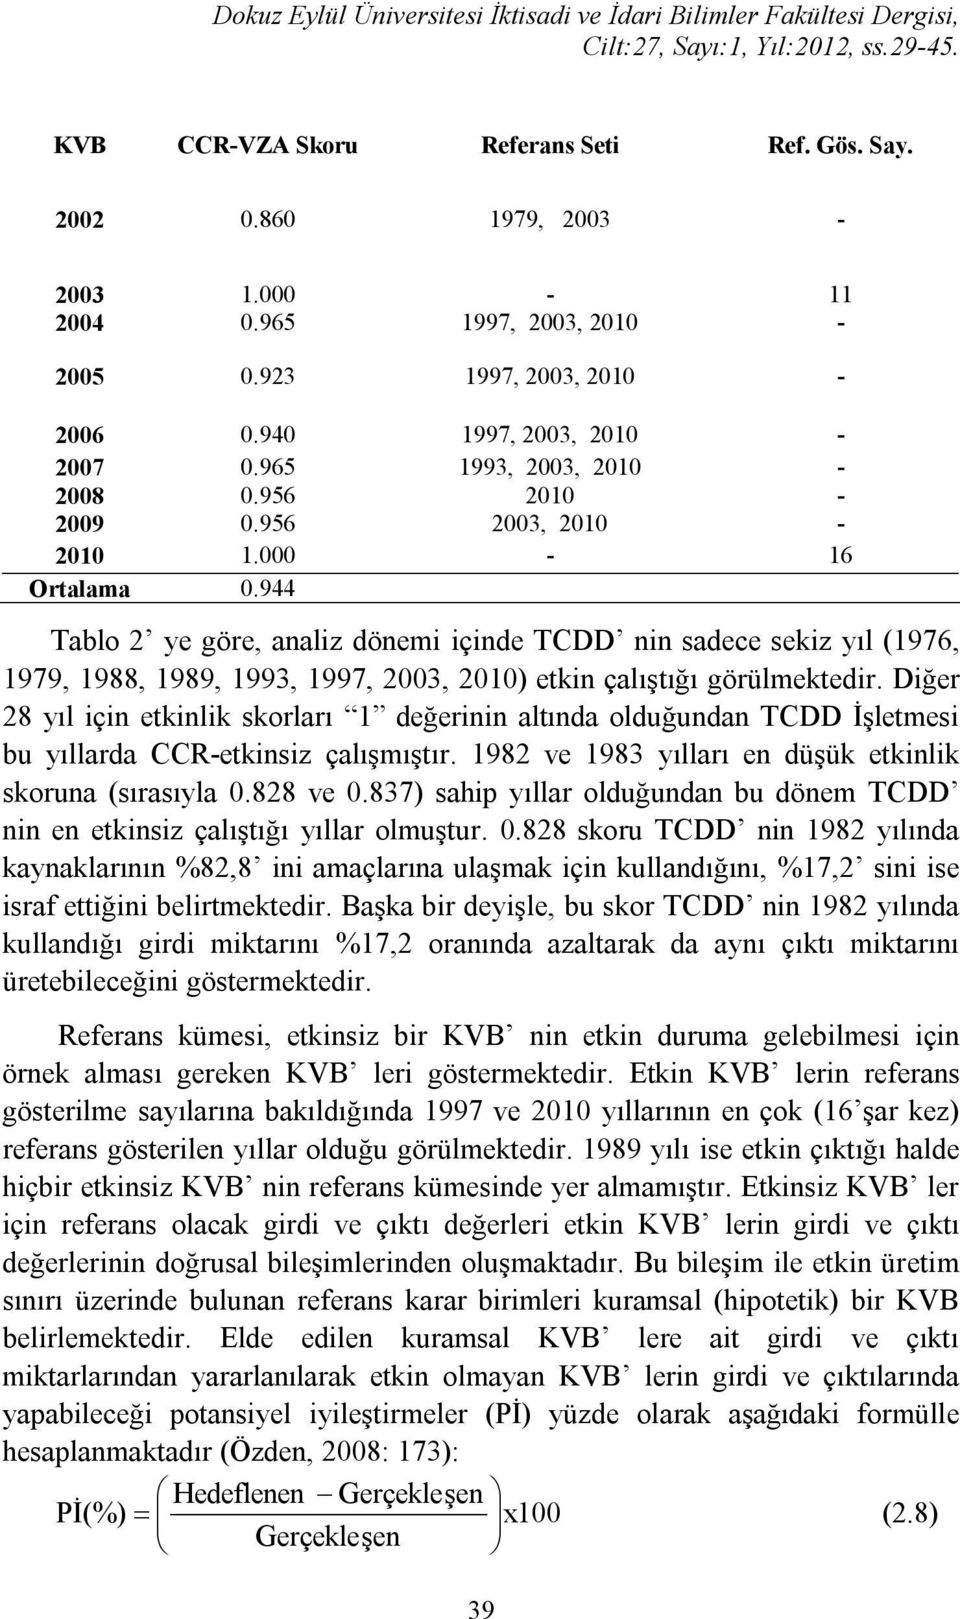 944 Tablo 2 ye göre, analiz dönemi içinde TCDD nin adece ekiz yıl (1976, 1979, 1988, 1989, 1993, 1997, 2003, 2010) etkin çalıştığı görülmektedir.